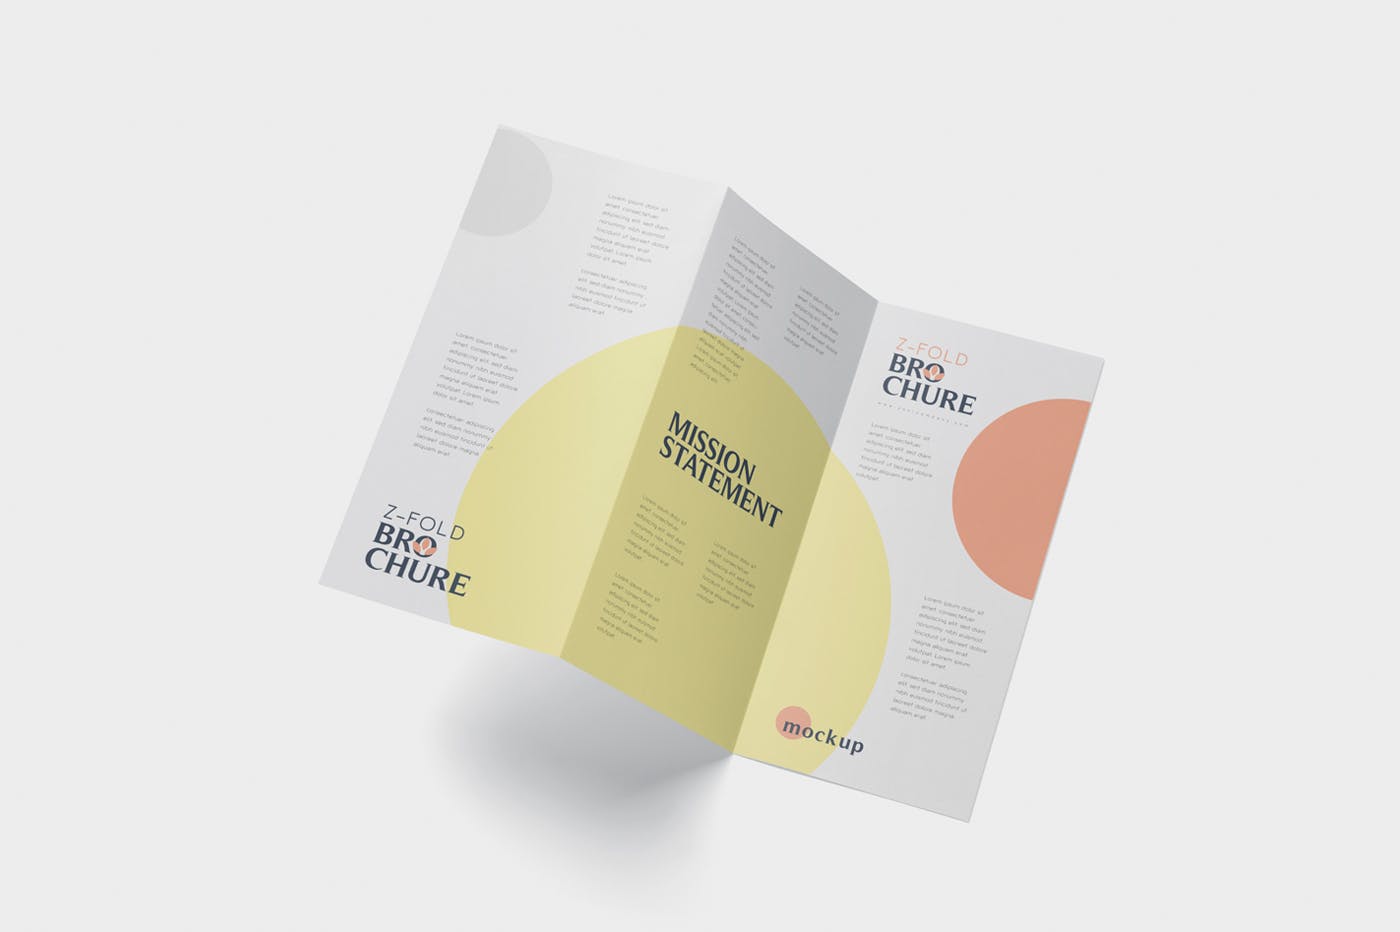 三折页设计风格企业传单/宣传单设计图样机16图库精选 DL Z-Fold Brochure Mockup – 99 x 210 mm Size插图(3)